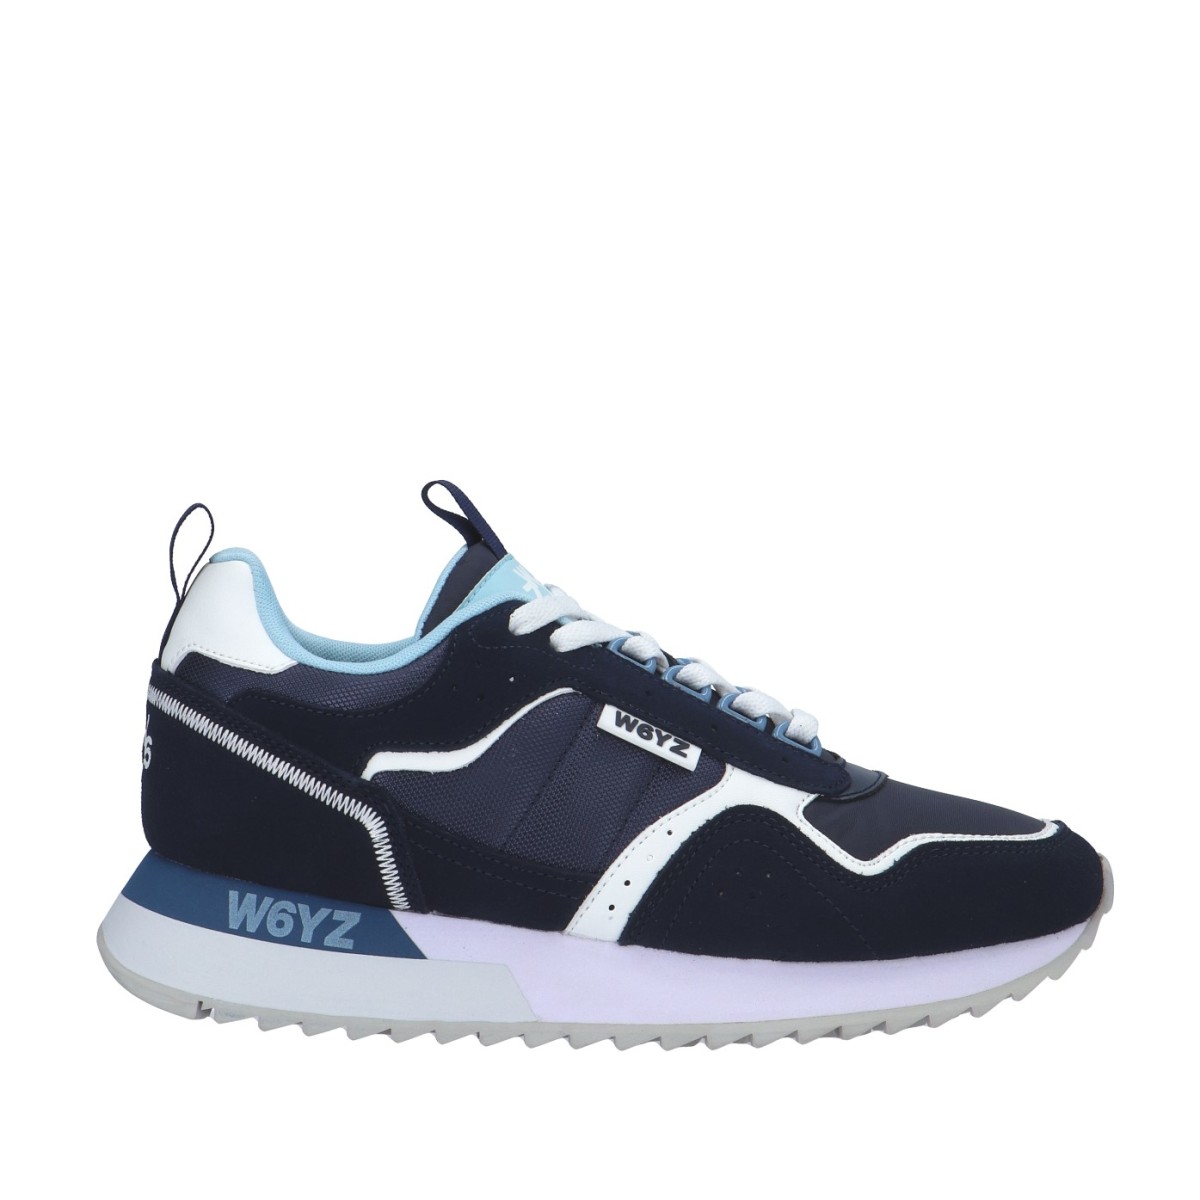 W6yz Sneaker Blu Gomma BOB